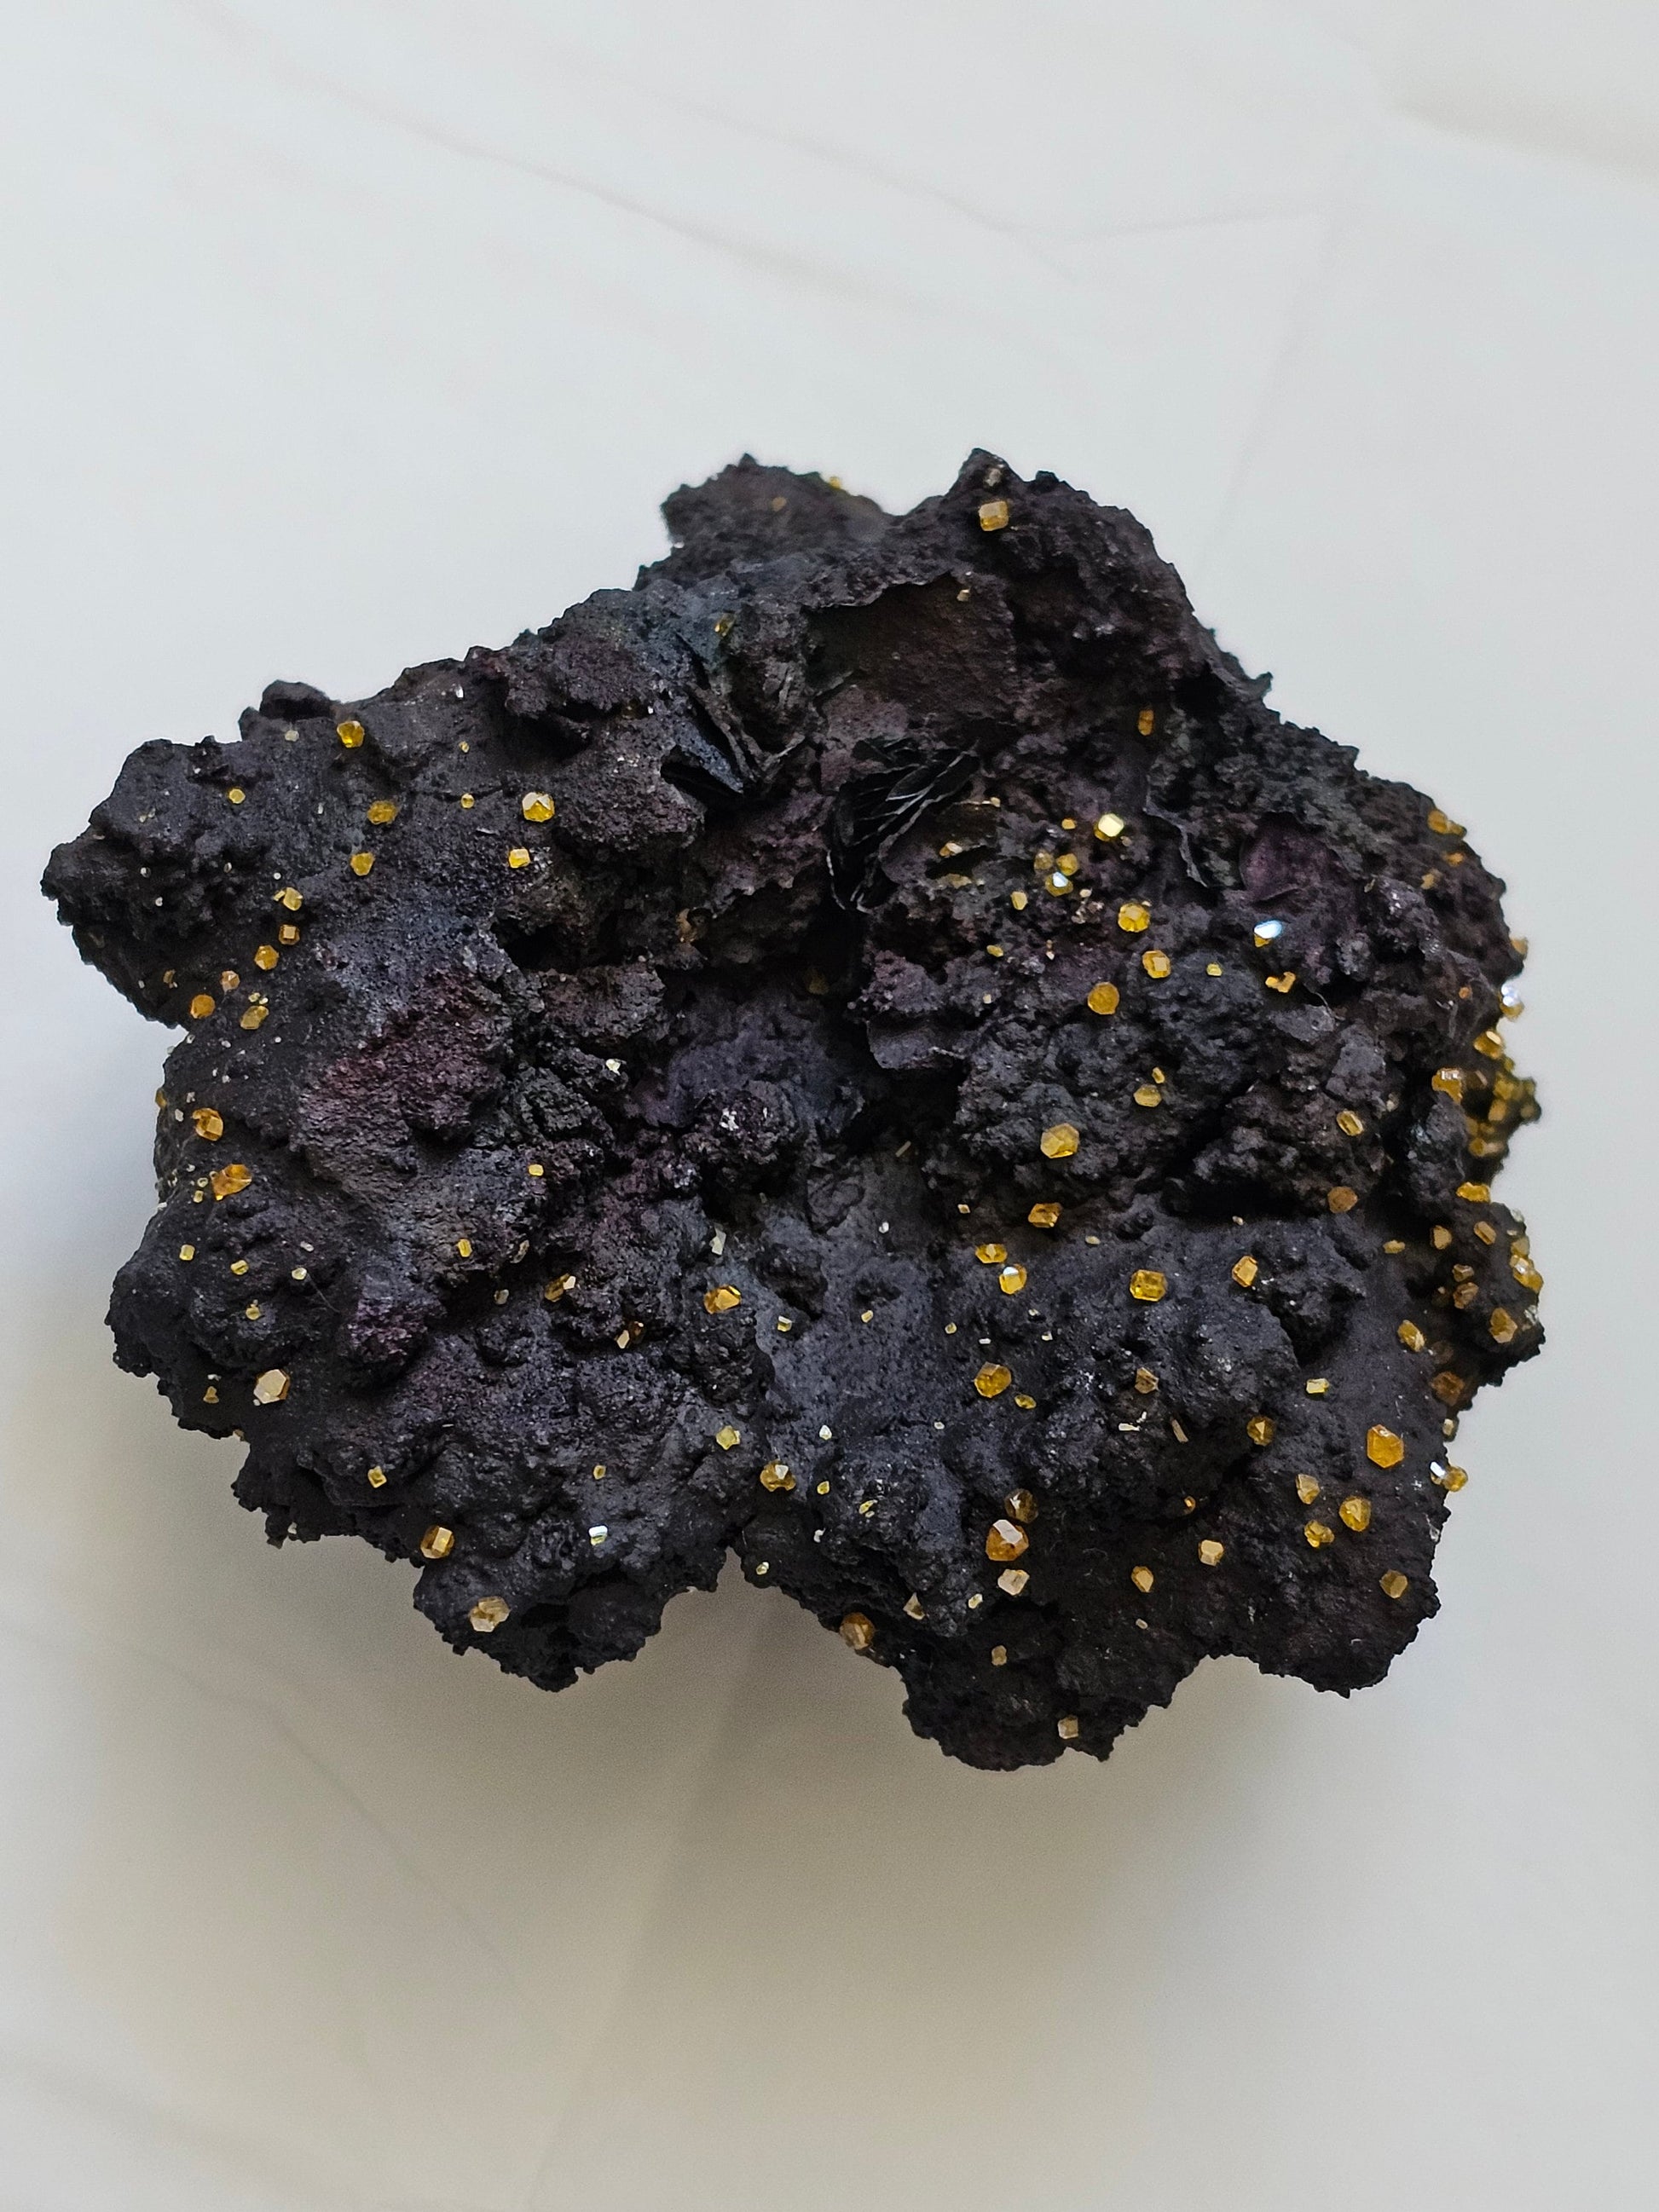 Rare Wulfenite on Matrix Cluster specimen